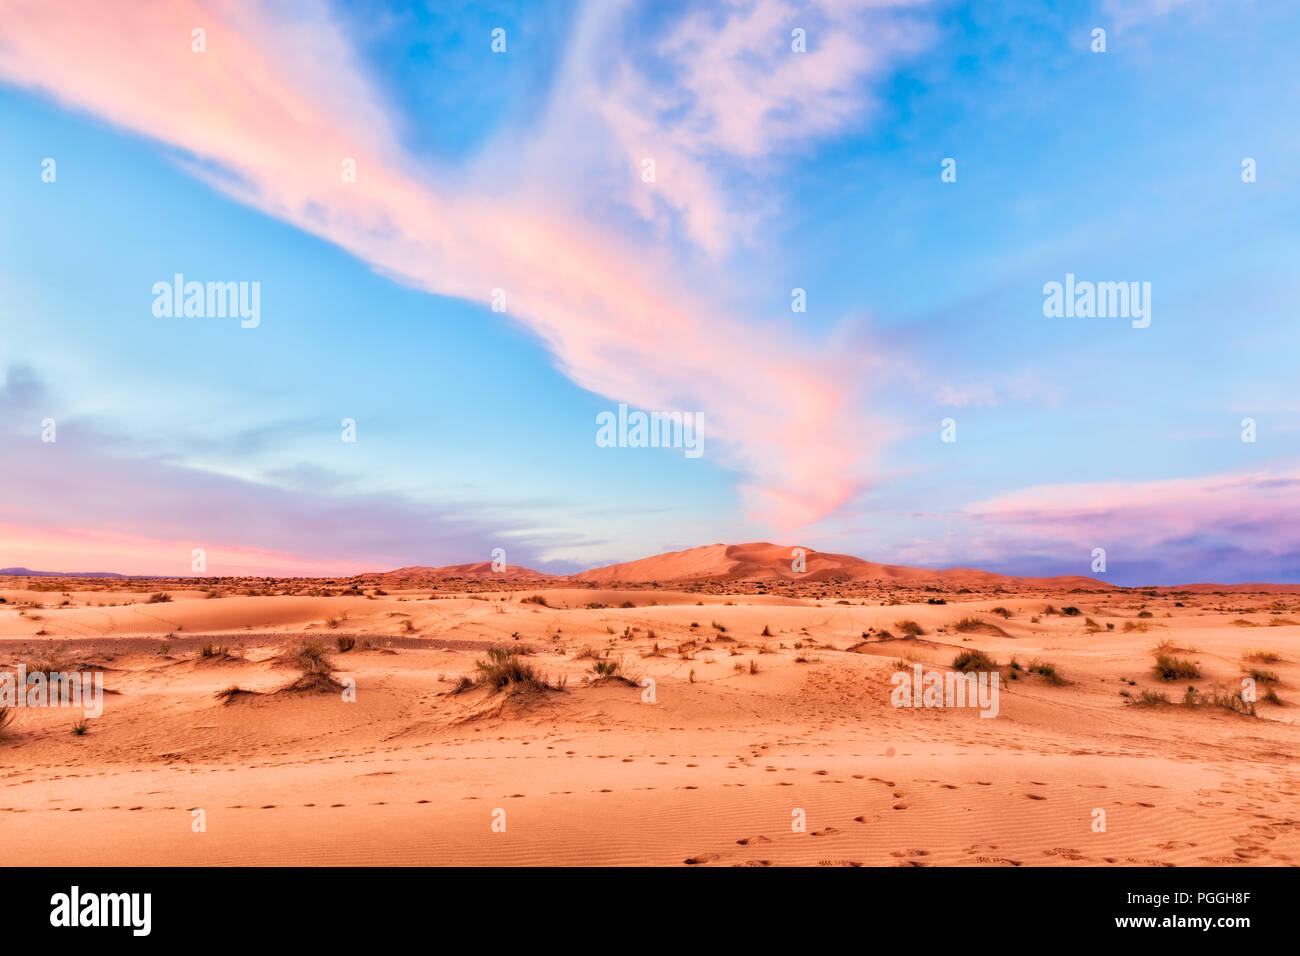 Rosa del Deserto del Sahara sunrise su vaste dune di sabbia arancione. Nuvole spettacolare streak attraverso il pastello blu cielo. Posizione: Marocco Foto Stock